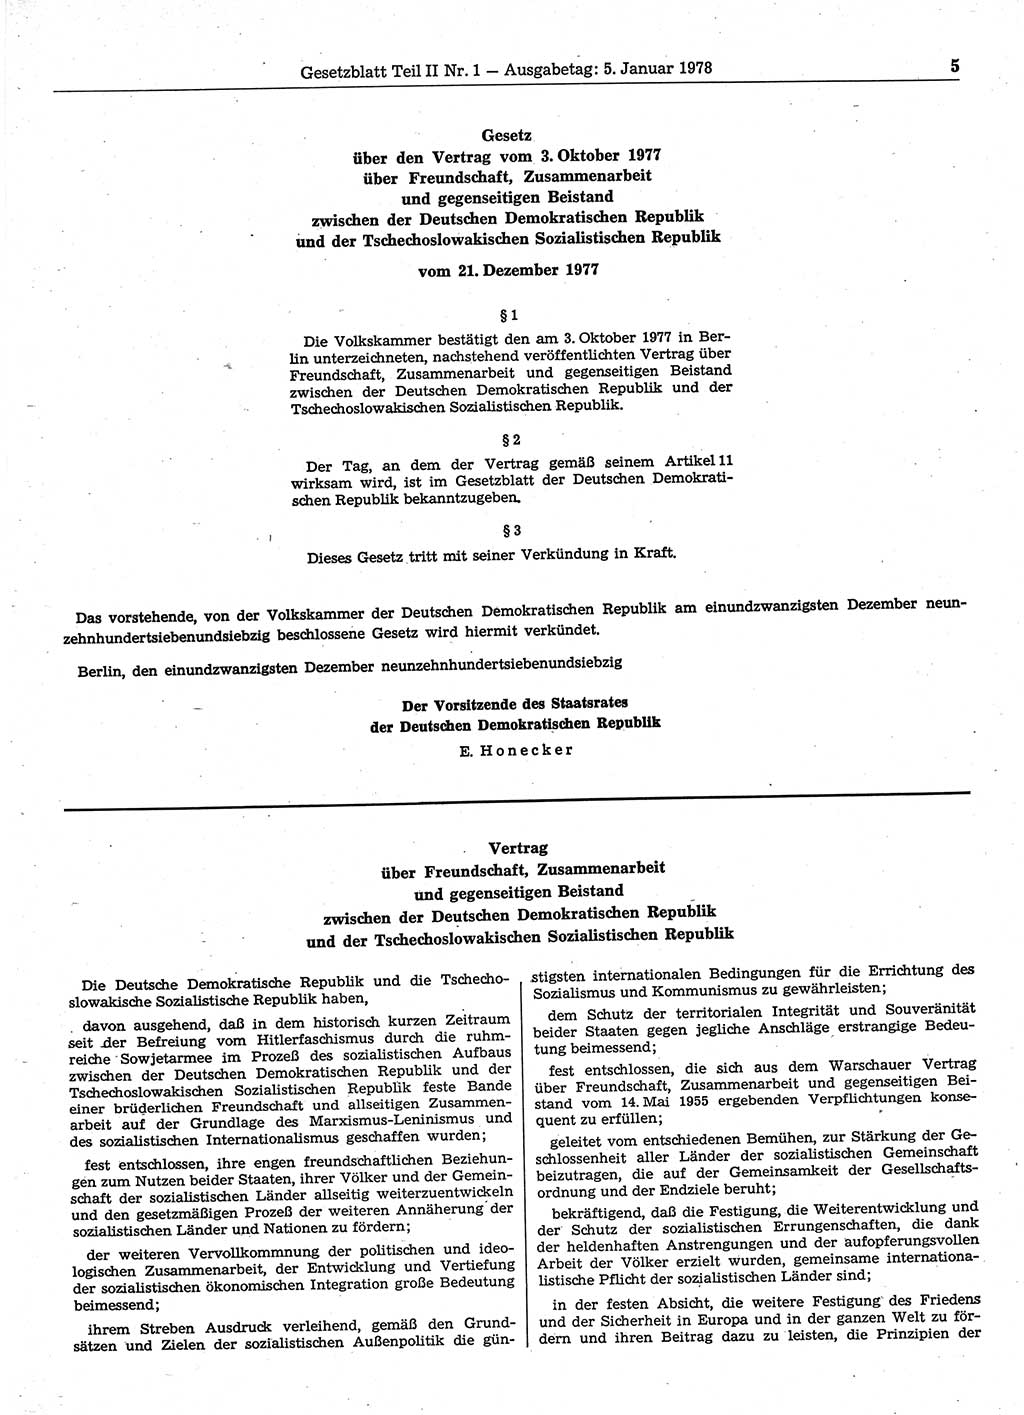 Gesetzblatt (GBl.) der Deutschen Demokratischen Republik (DDR) Teil ⅠⅠ 1978, Seite 5 (GBl. DDR ⅠⅠ 1978, S. 5)